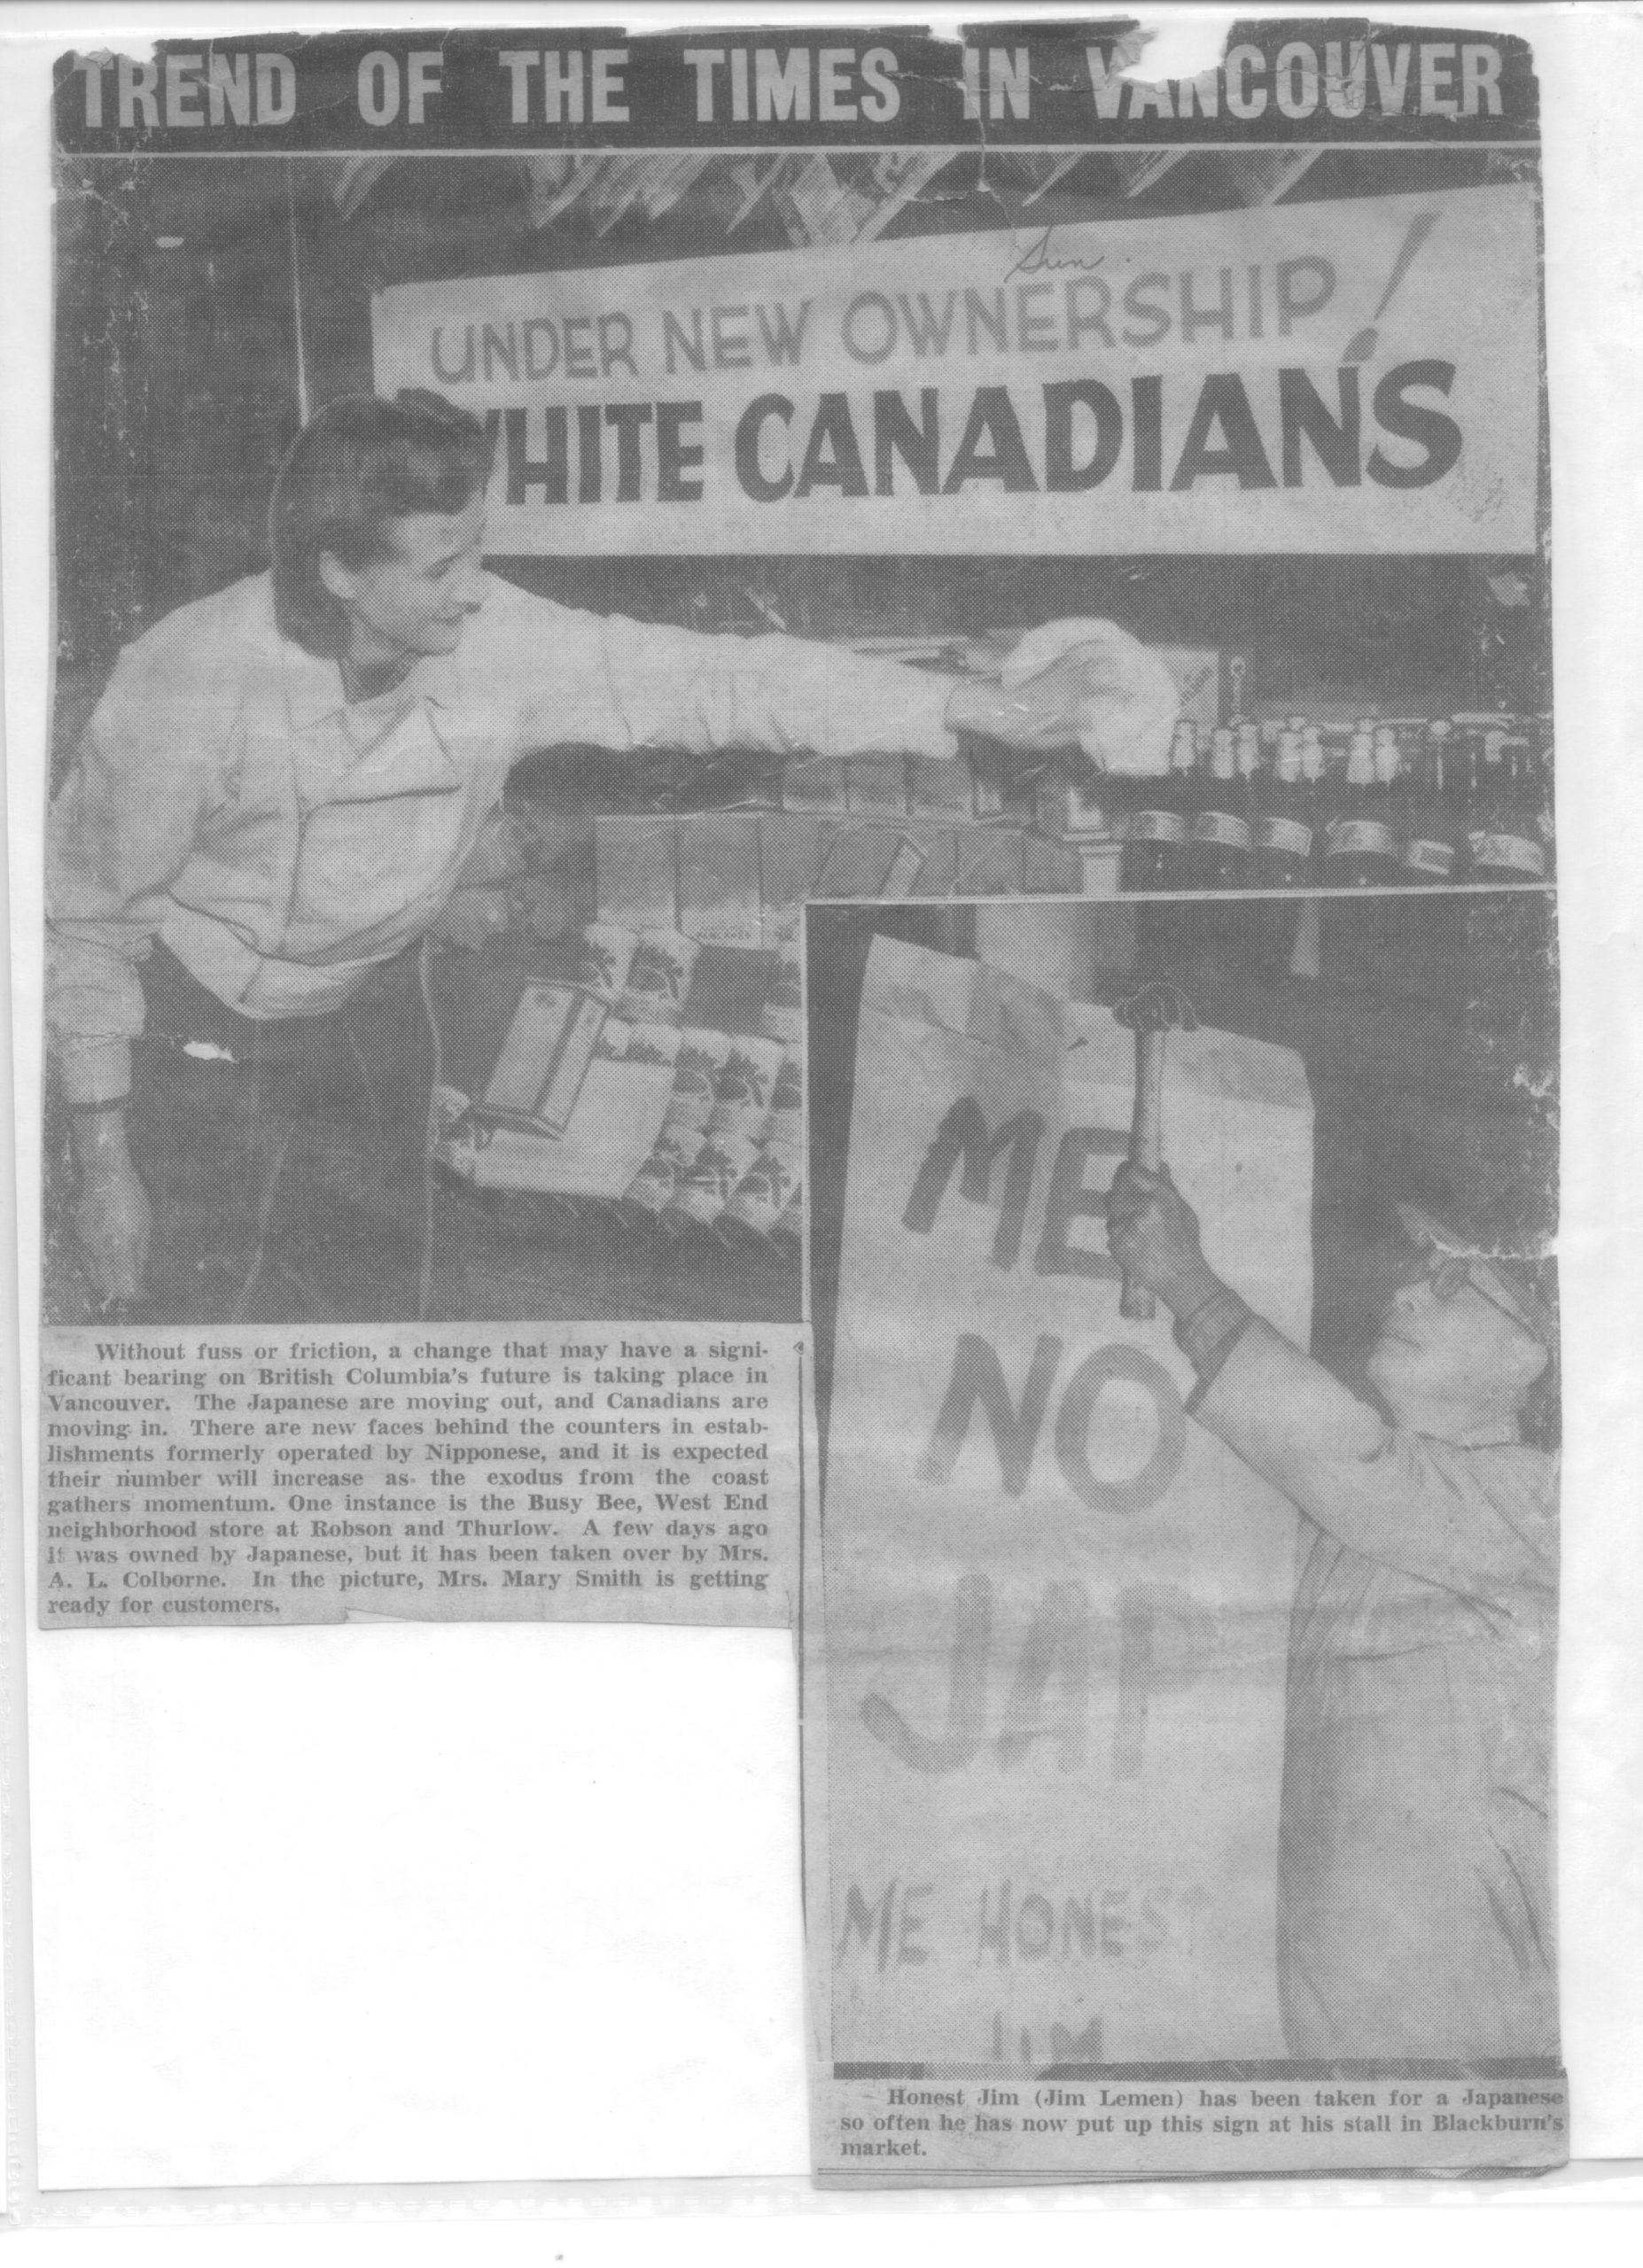 Coupure de journal montrant un homme polissant une fenêtre avec une pancarte indiquantSous un nouveau propriétaire! Canadiens blancs et une autre indiquant Me No Jap